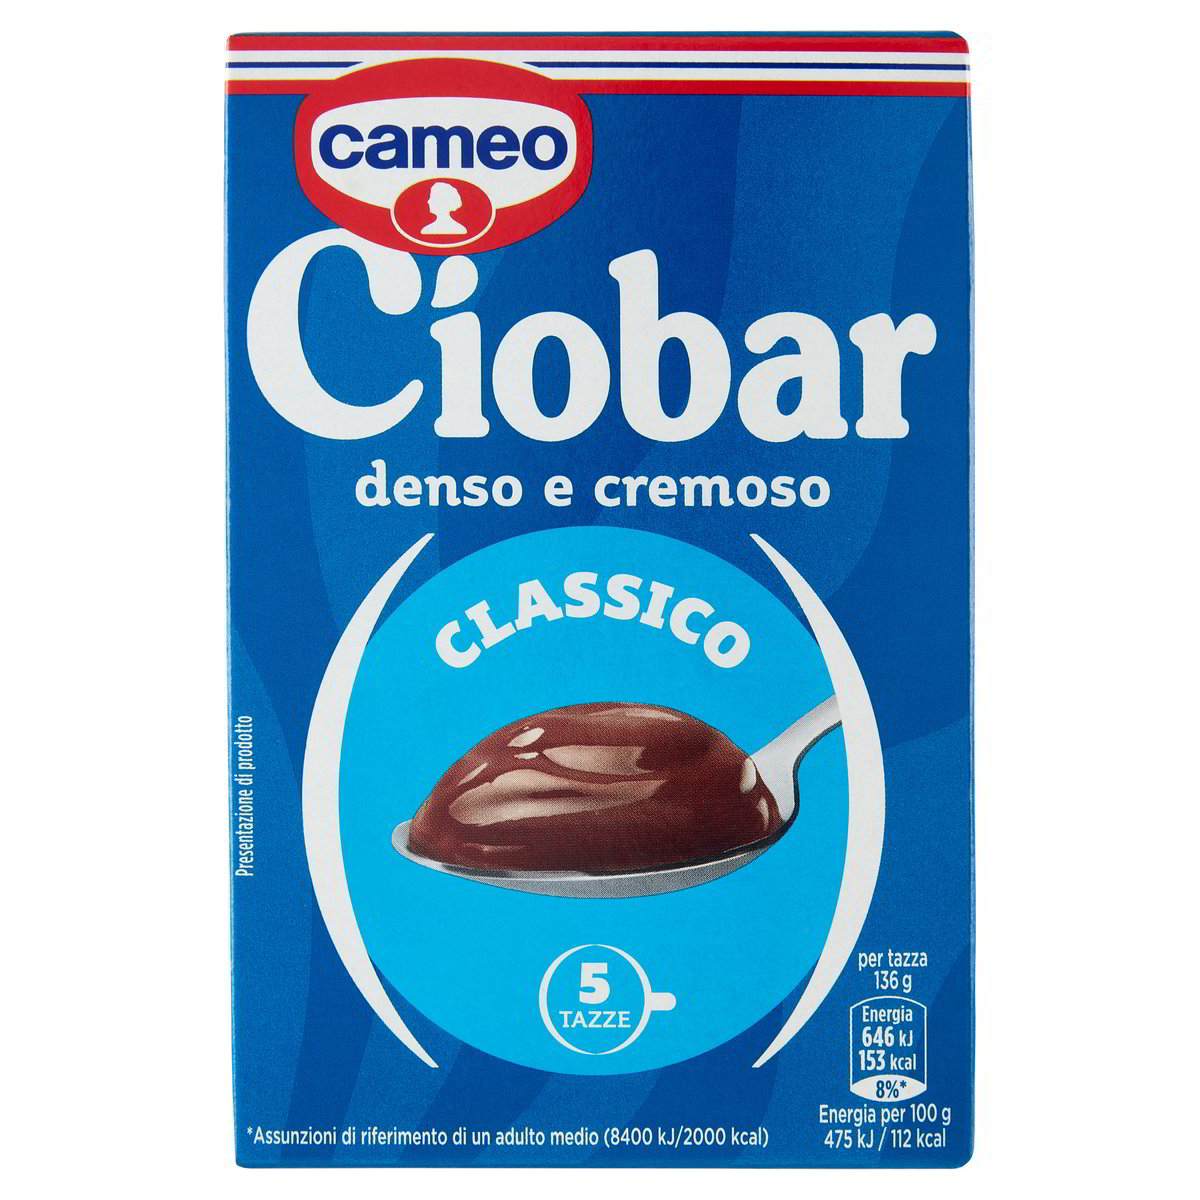 Ciobar Denso & Cremoso